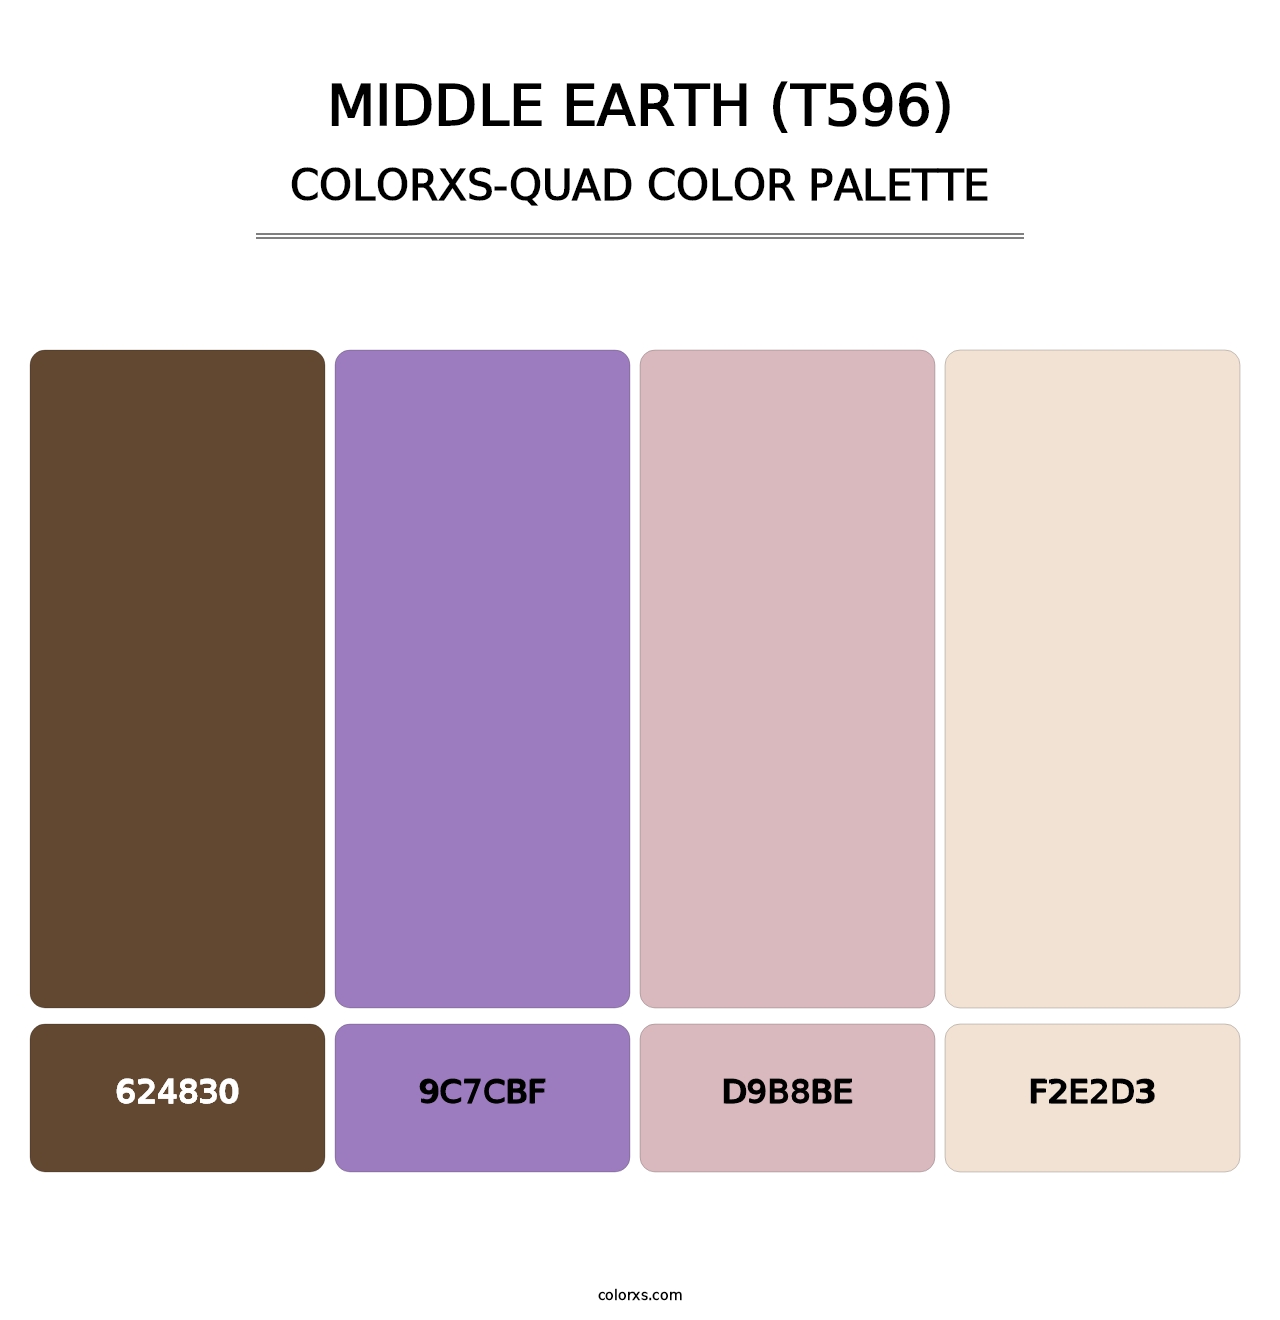 Middle Earth (T596) - Colorxs Quad Palette